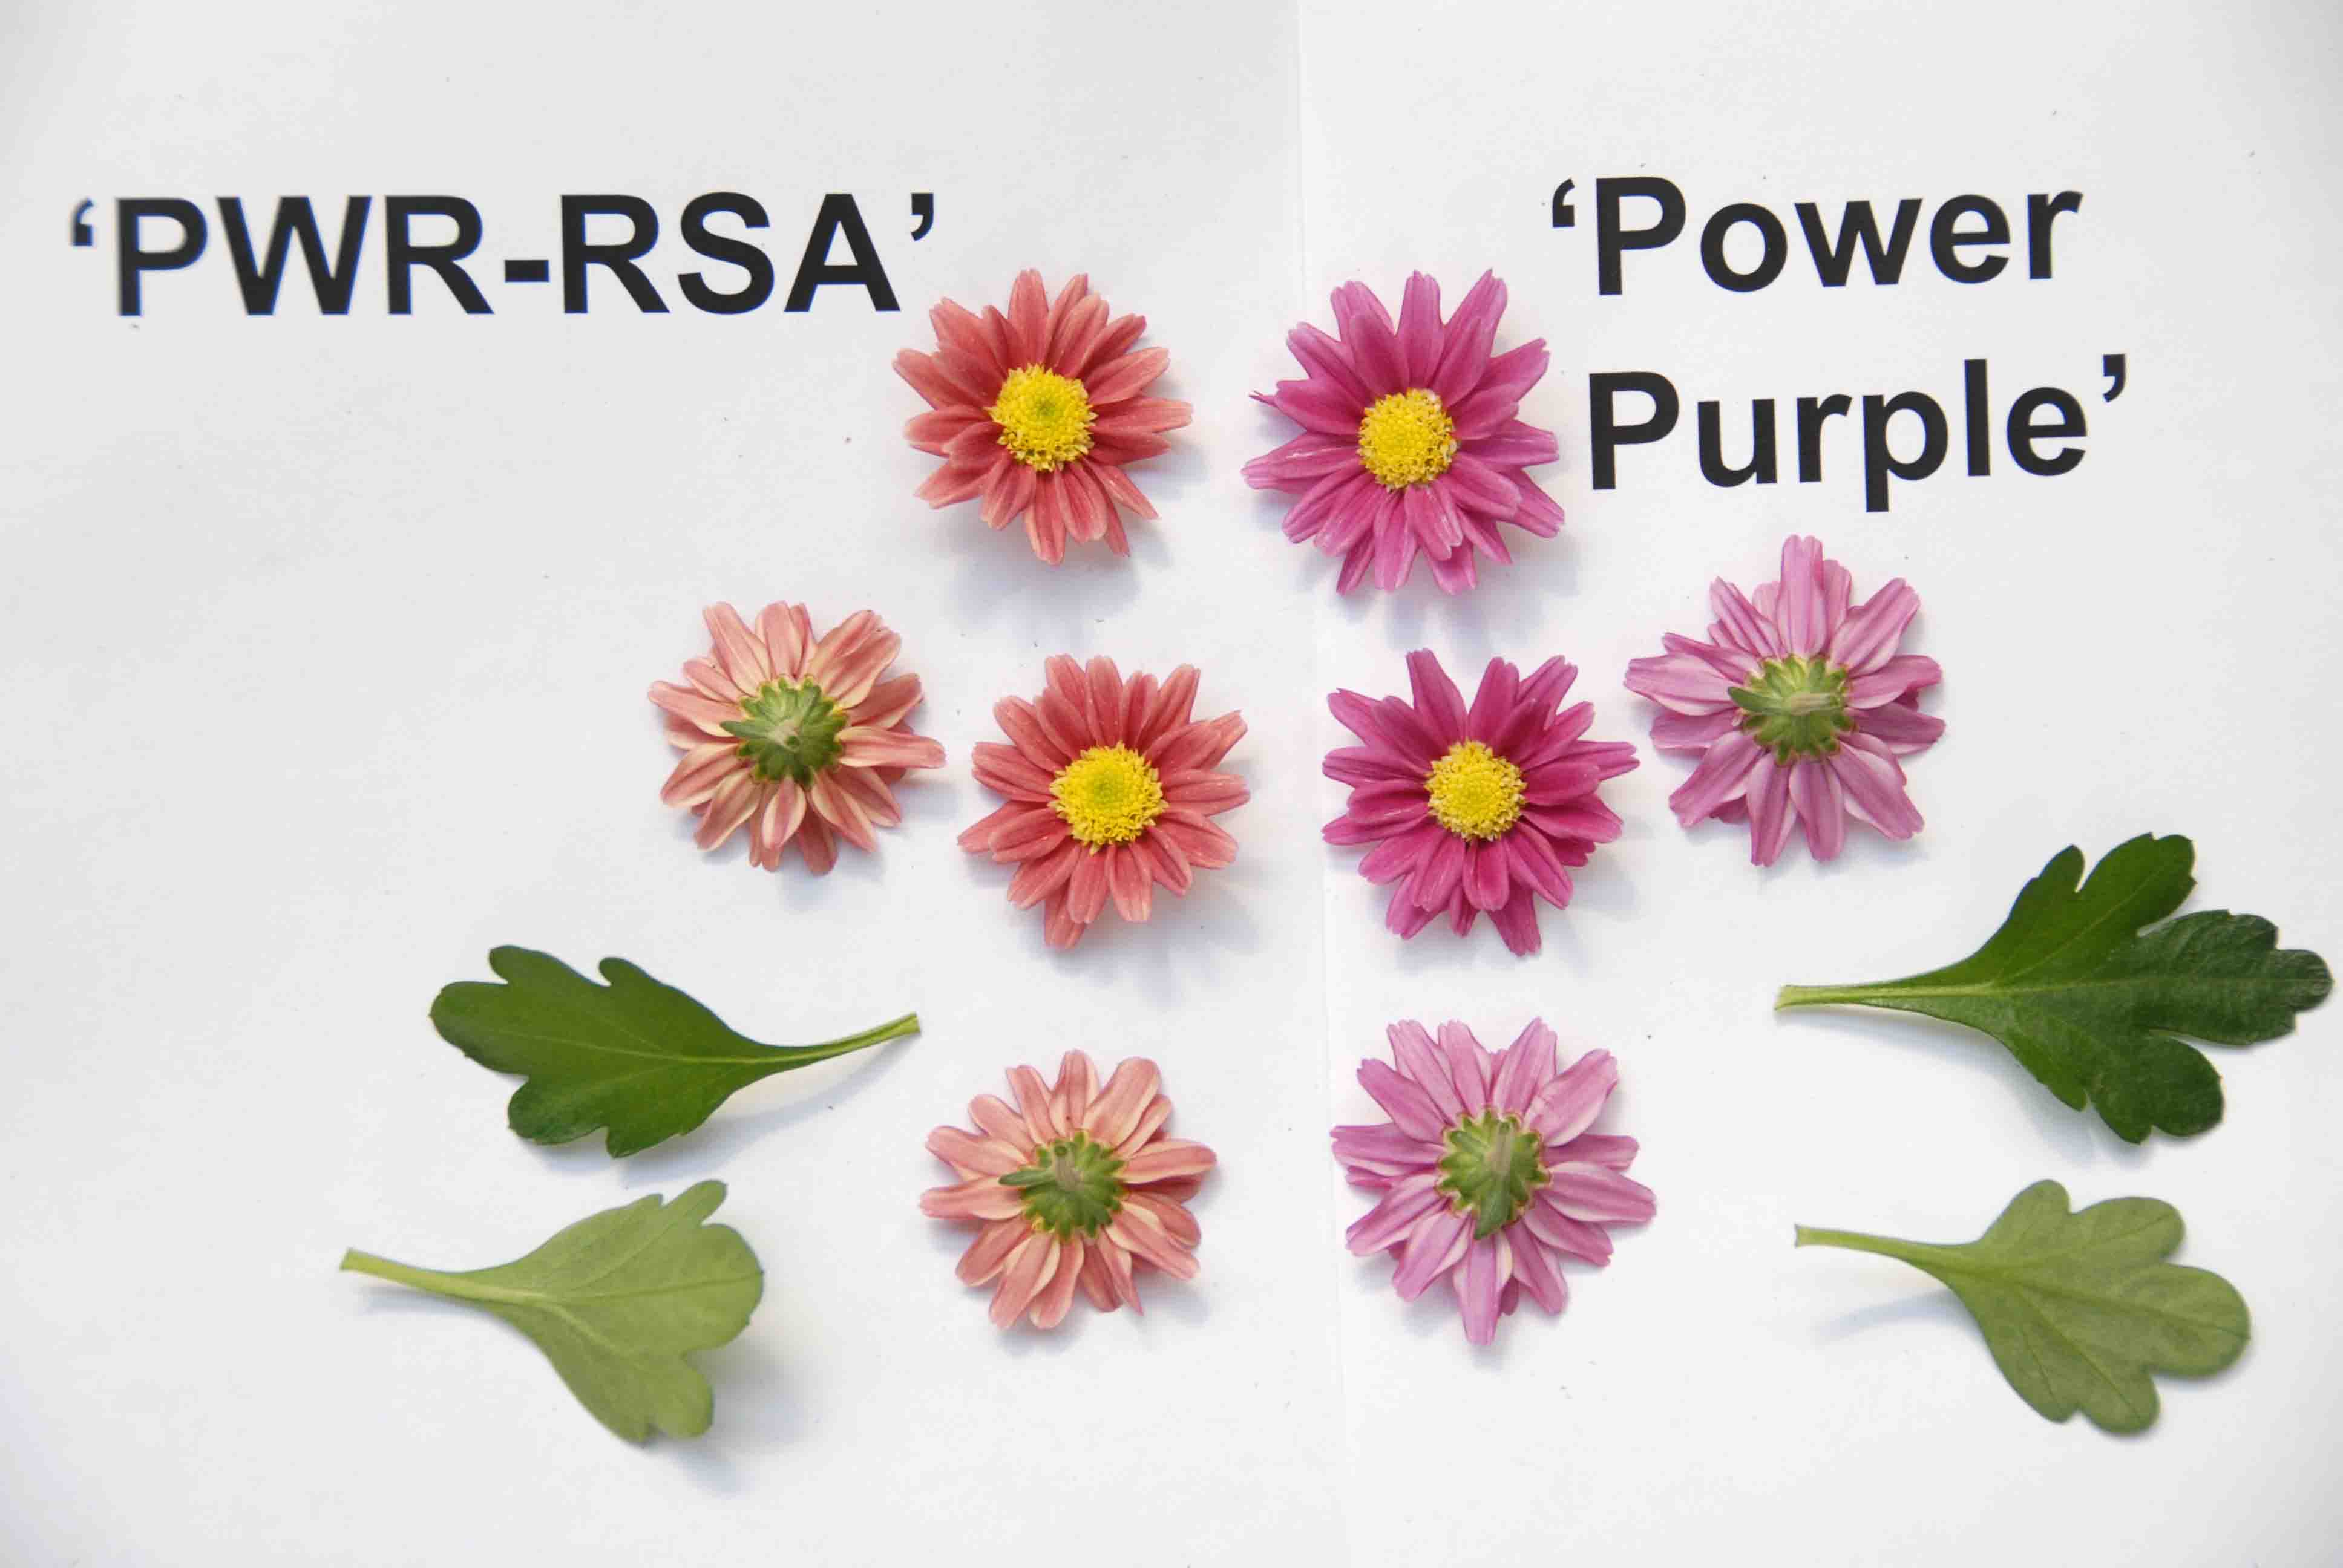 PWR-RSA